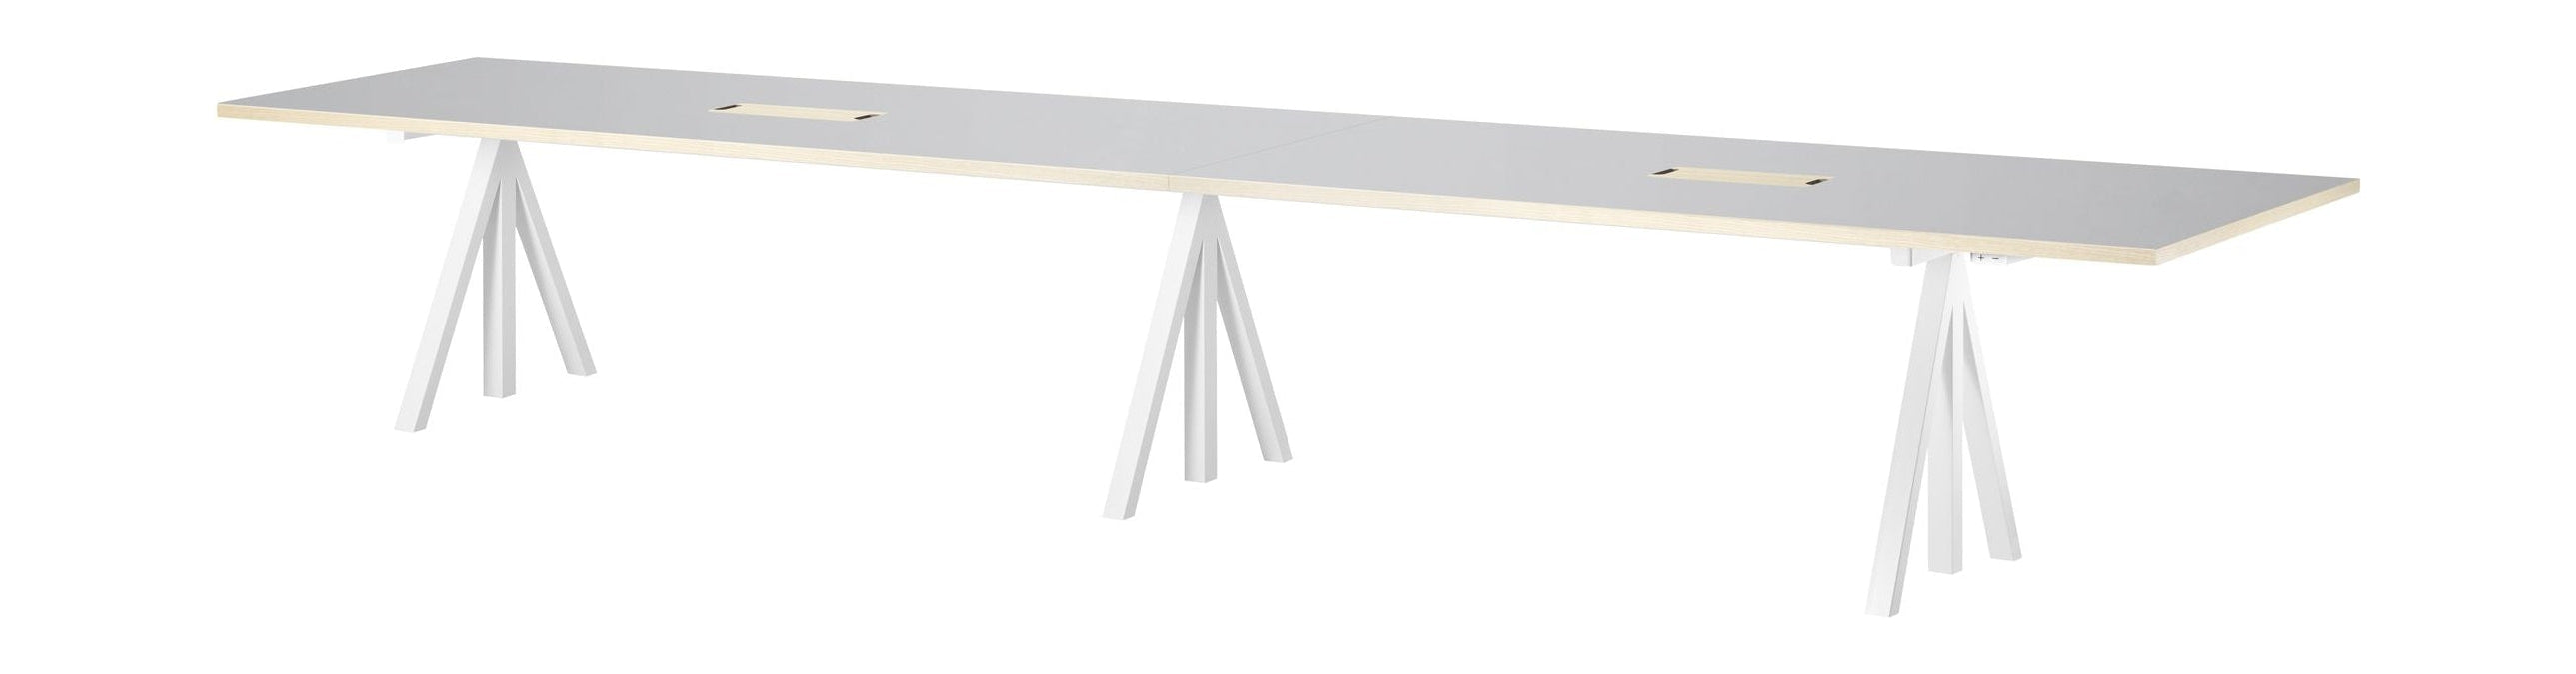 String Furniture Höhenverstellbarer Konferenztisch 90x180 Cm, Linoleum hellgrau